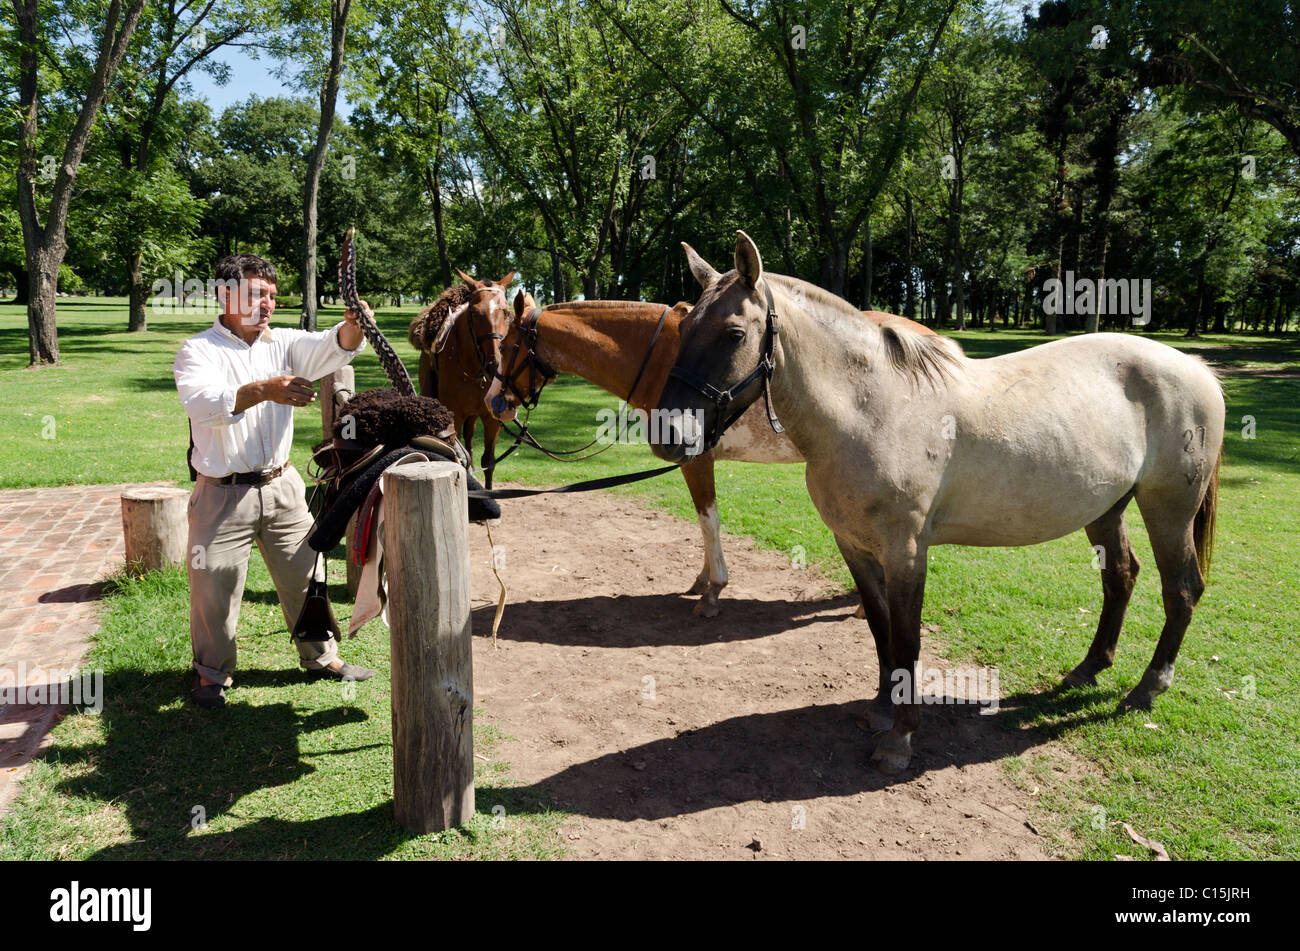 Ranch (estancia) La Bamba, San Antonio de Areco, province of Buenos Aires, Argentina Stock Photo